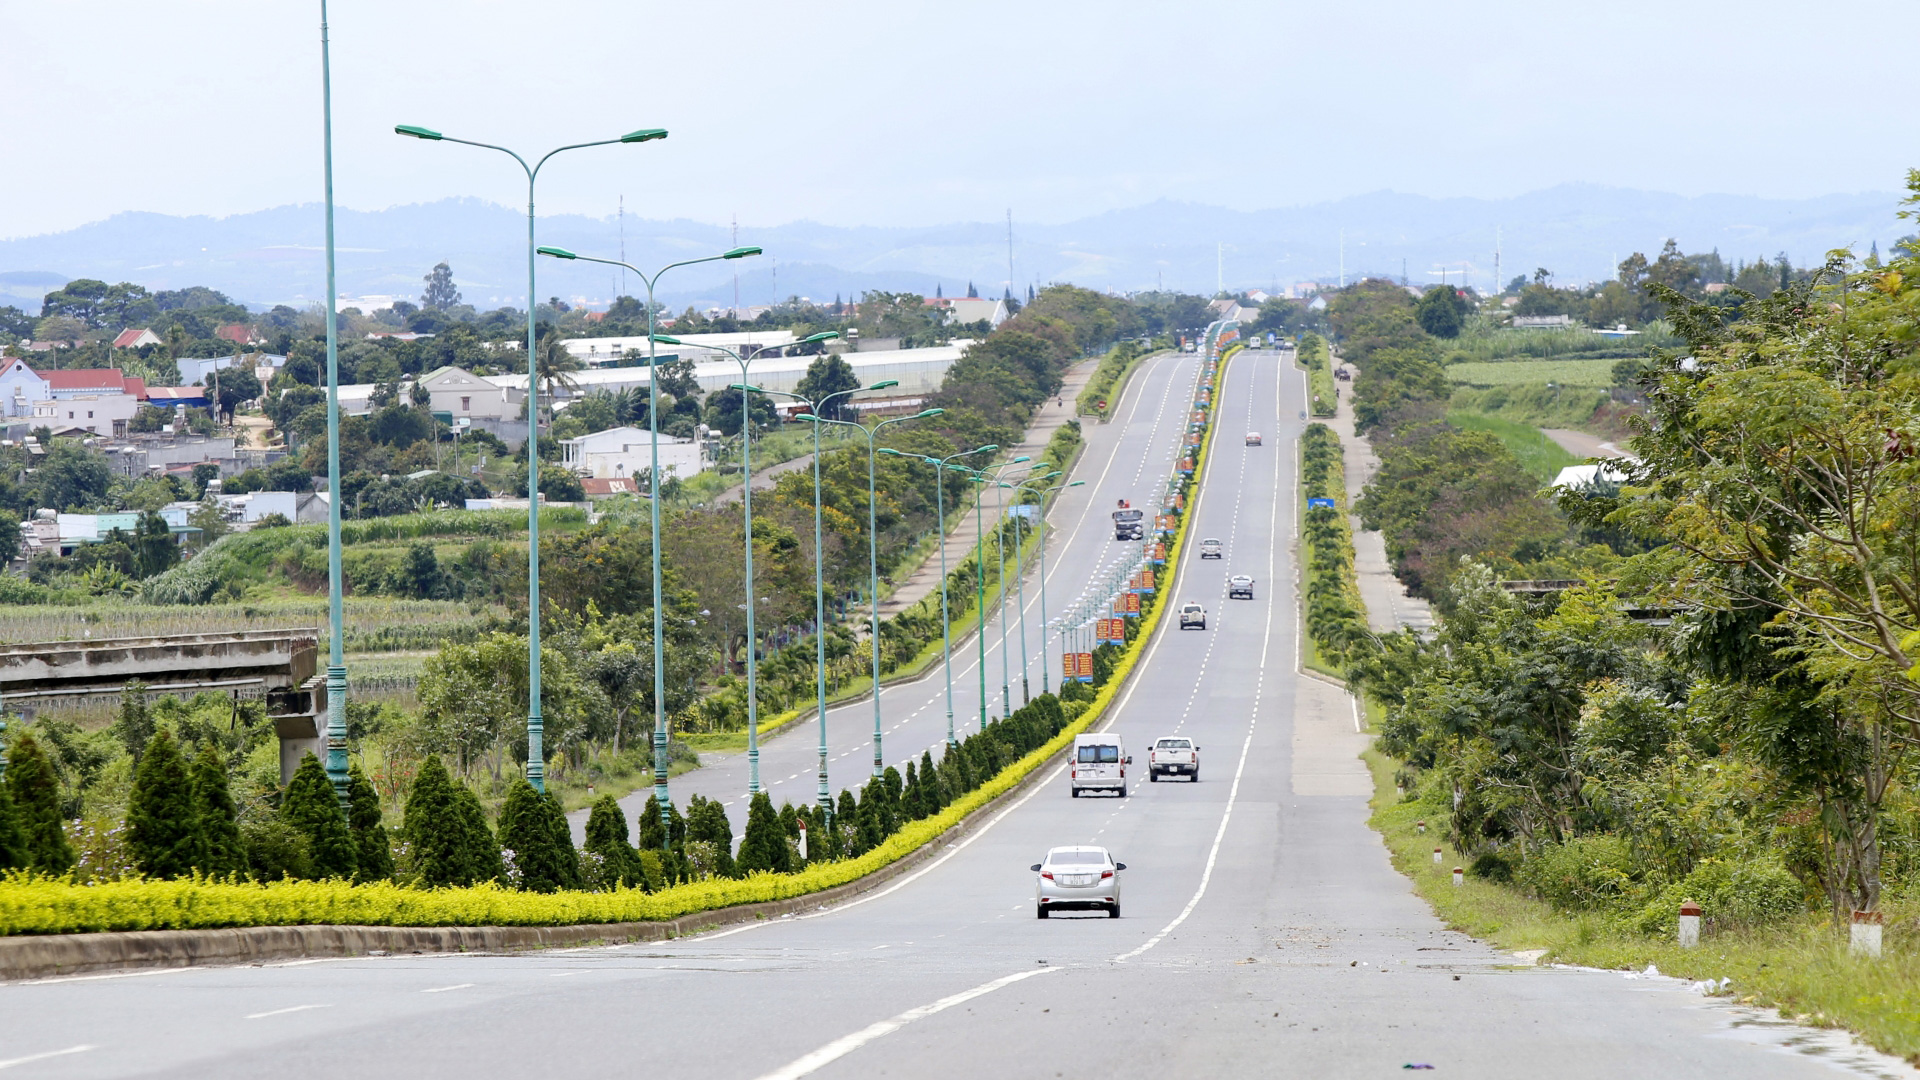 Cao tốc Liên Khương - Prenn dài gần 20km hiện là tuyến cao tốc duy nhất tại Lâm Đồng